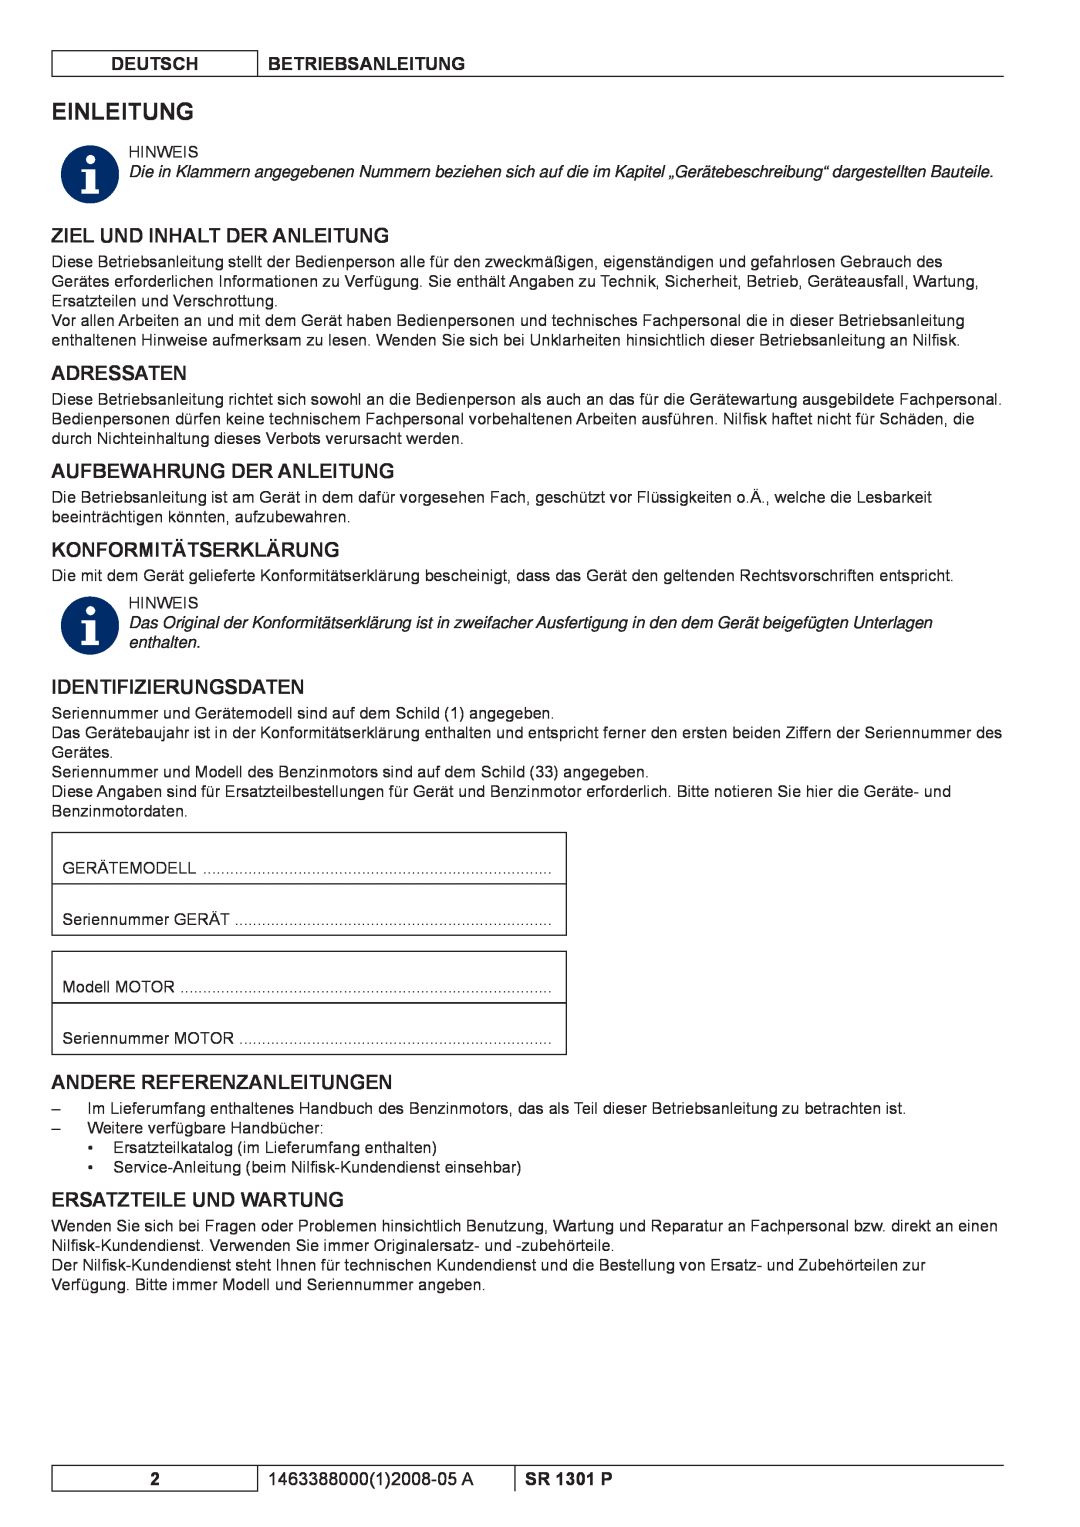 Nilfisk-ALTO SR 1301 P Einleitung, Ziel Und Inhalt Der Anleitung, Adressaten, Aufbewahrung Der Anleitung, Deutsch 